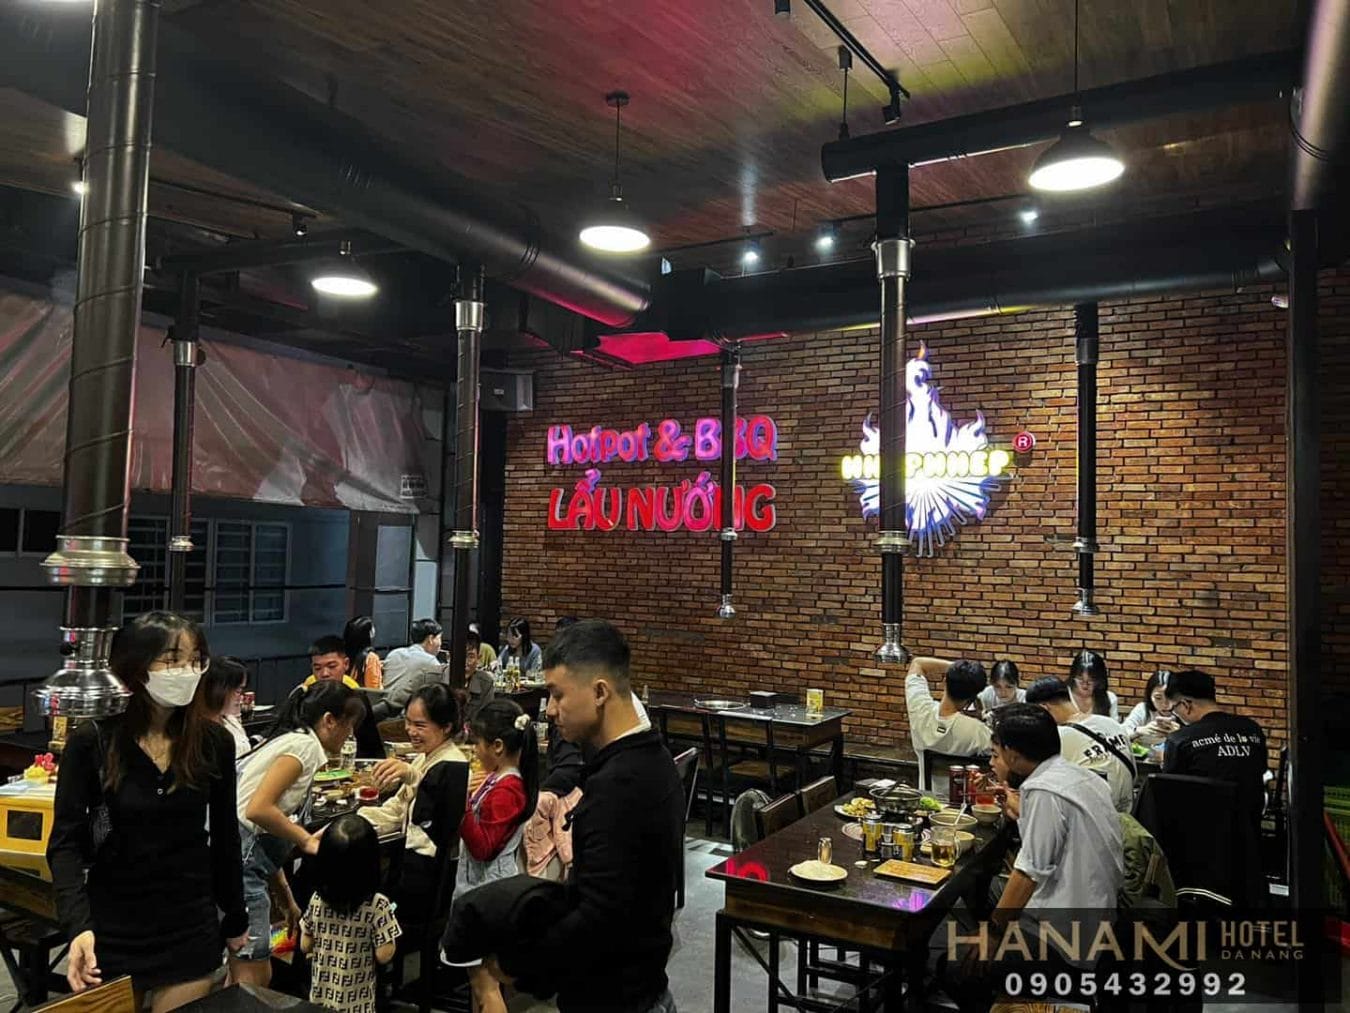 best restaurants for frog hotpot in da nang